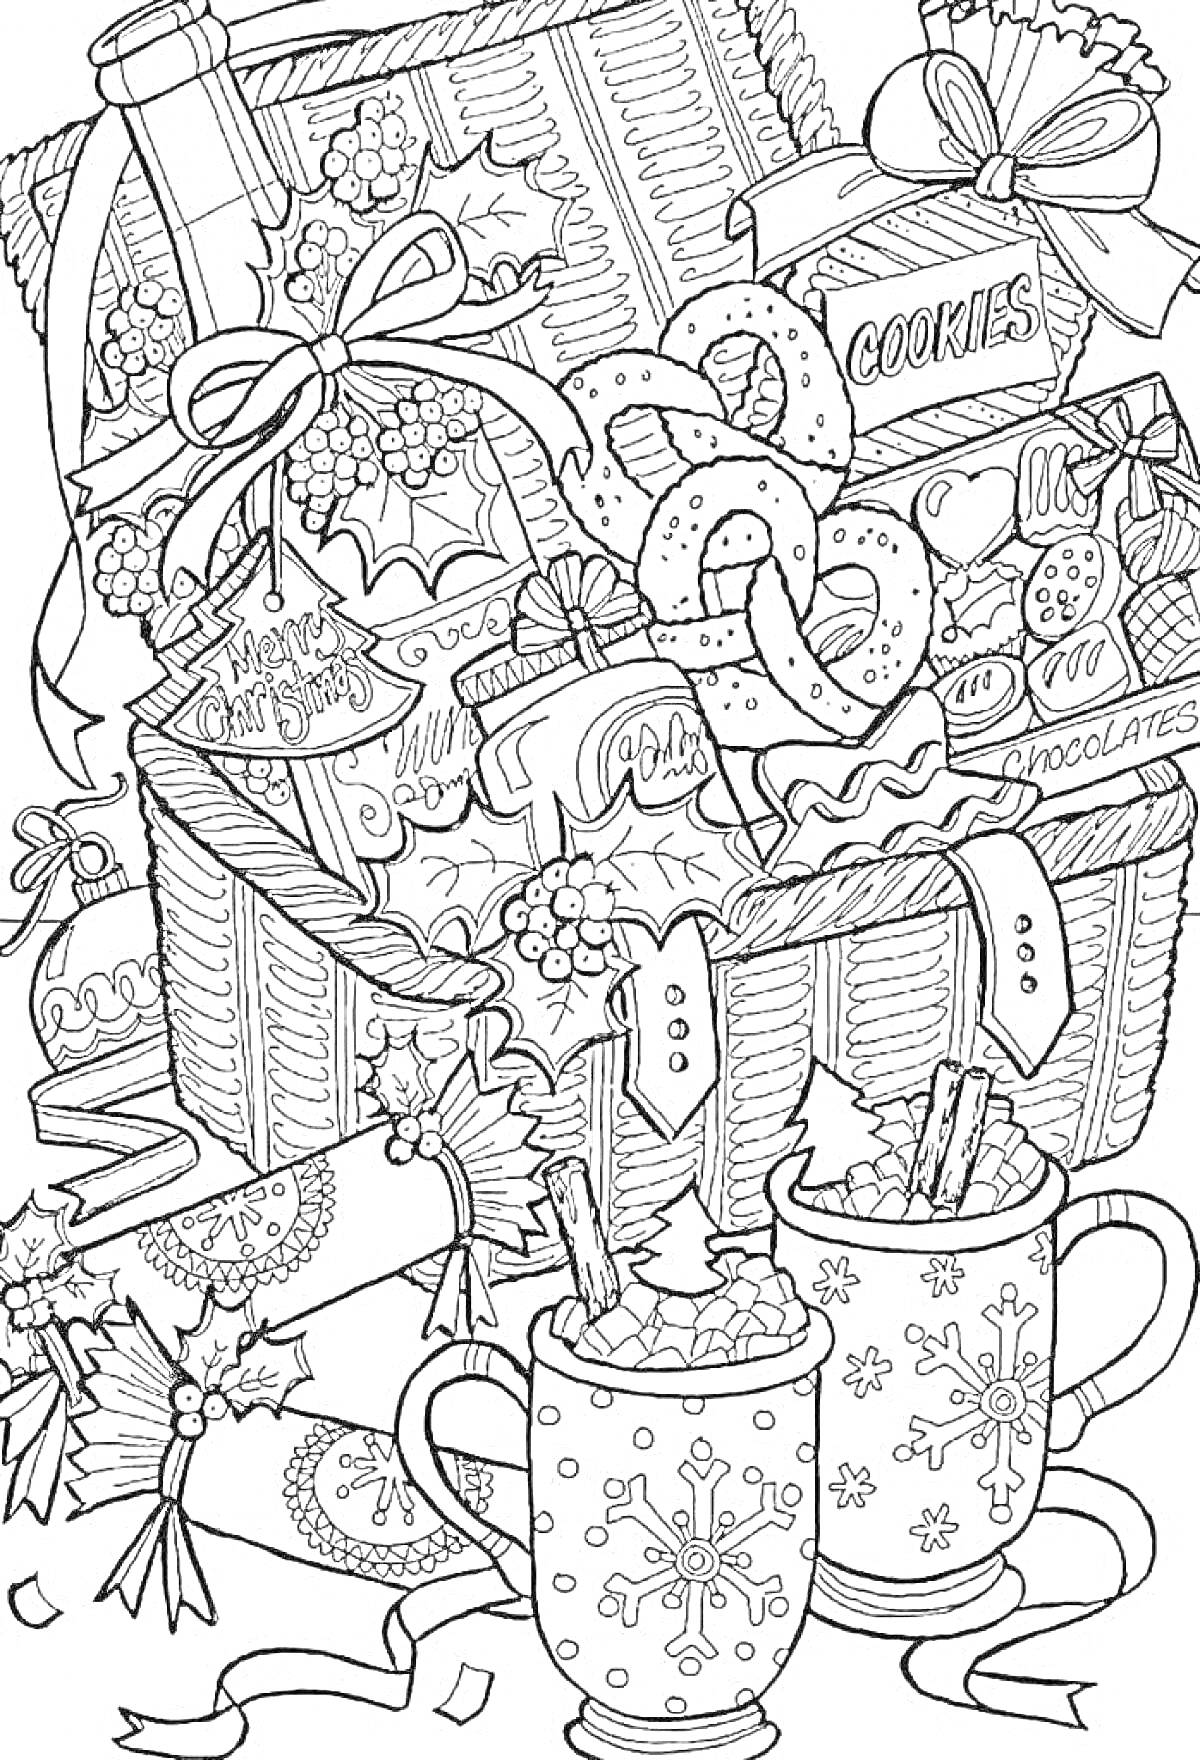 Раскраска Корзина с рождественскими сладостями, перемотанные лентами подарки, кружки какао с маршмеллоу, печенье, конфеты, шоколад, украшения из омелы